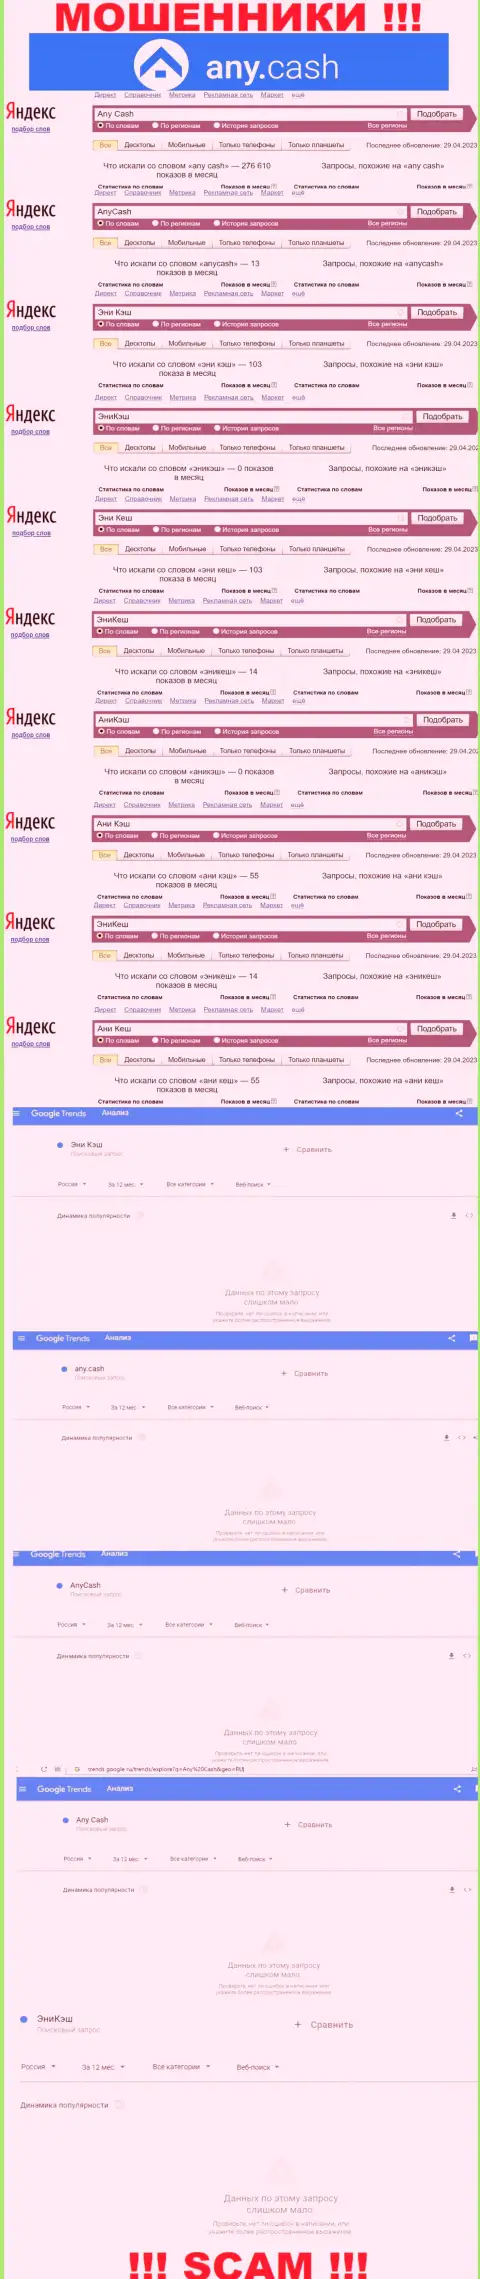 Скрин результатов online-запросов по неправомерно действующей компании Эни Кеш